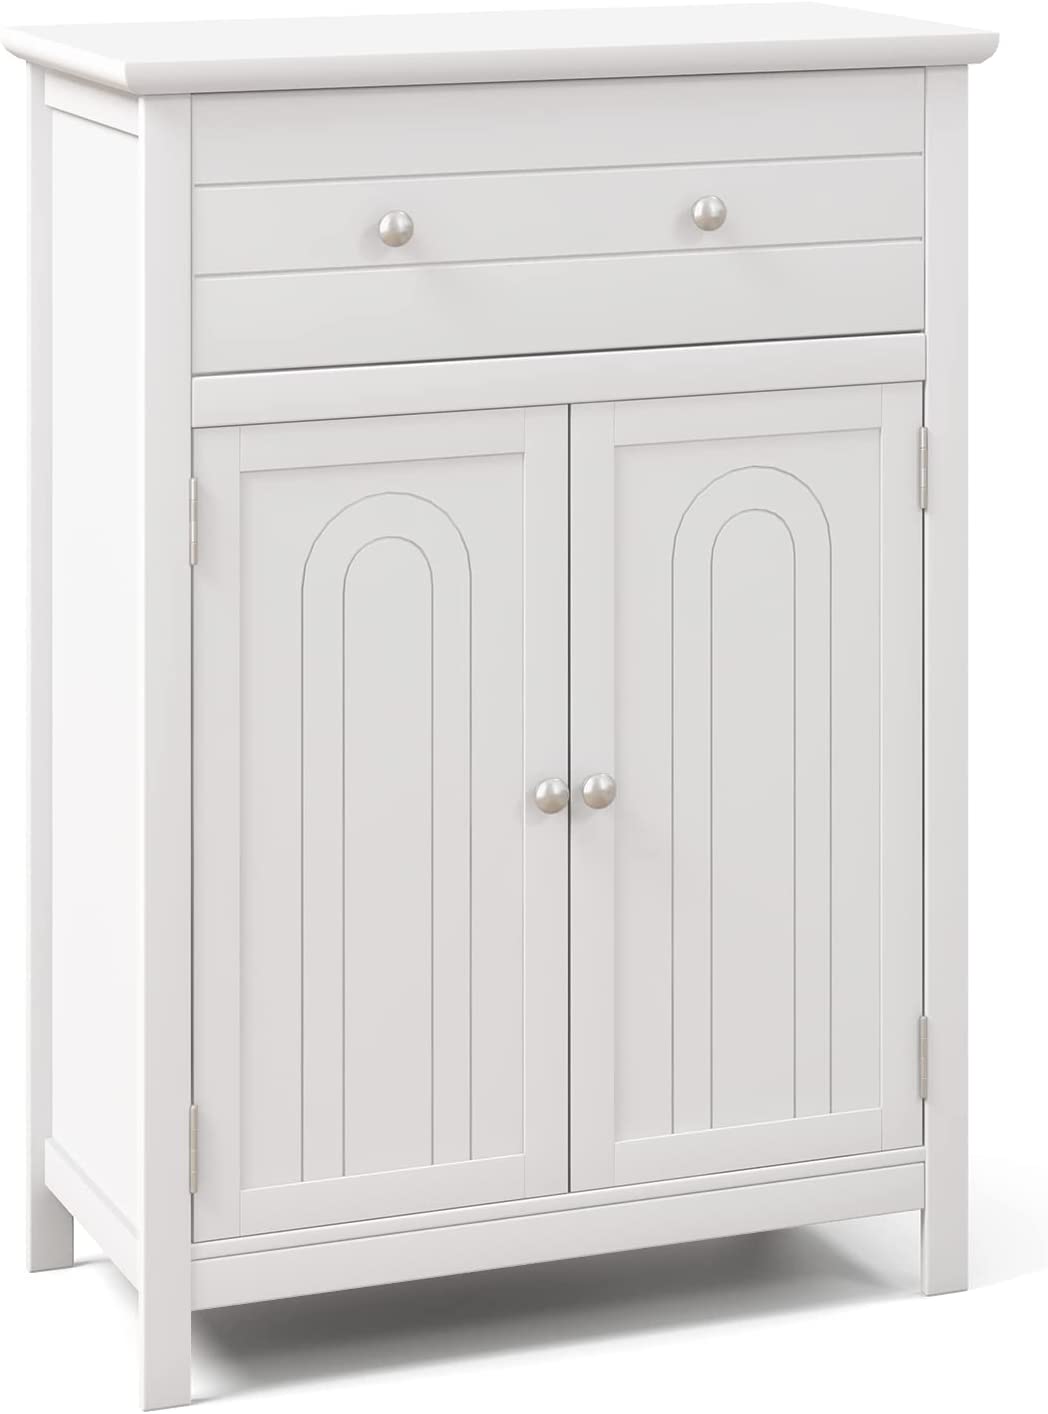 Giantex Bathroom Storage Cabinet with Drawer - Floor Cabinet with Doors, Adjustable Shelf